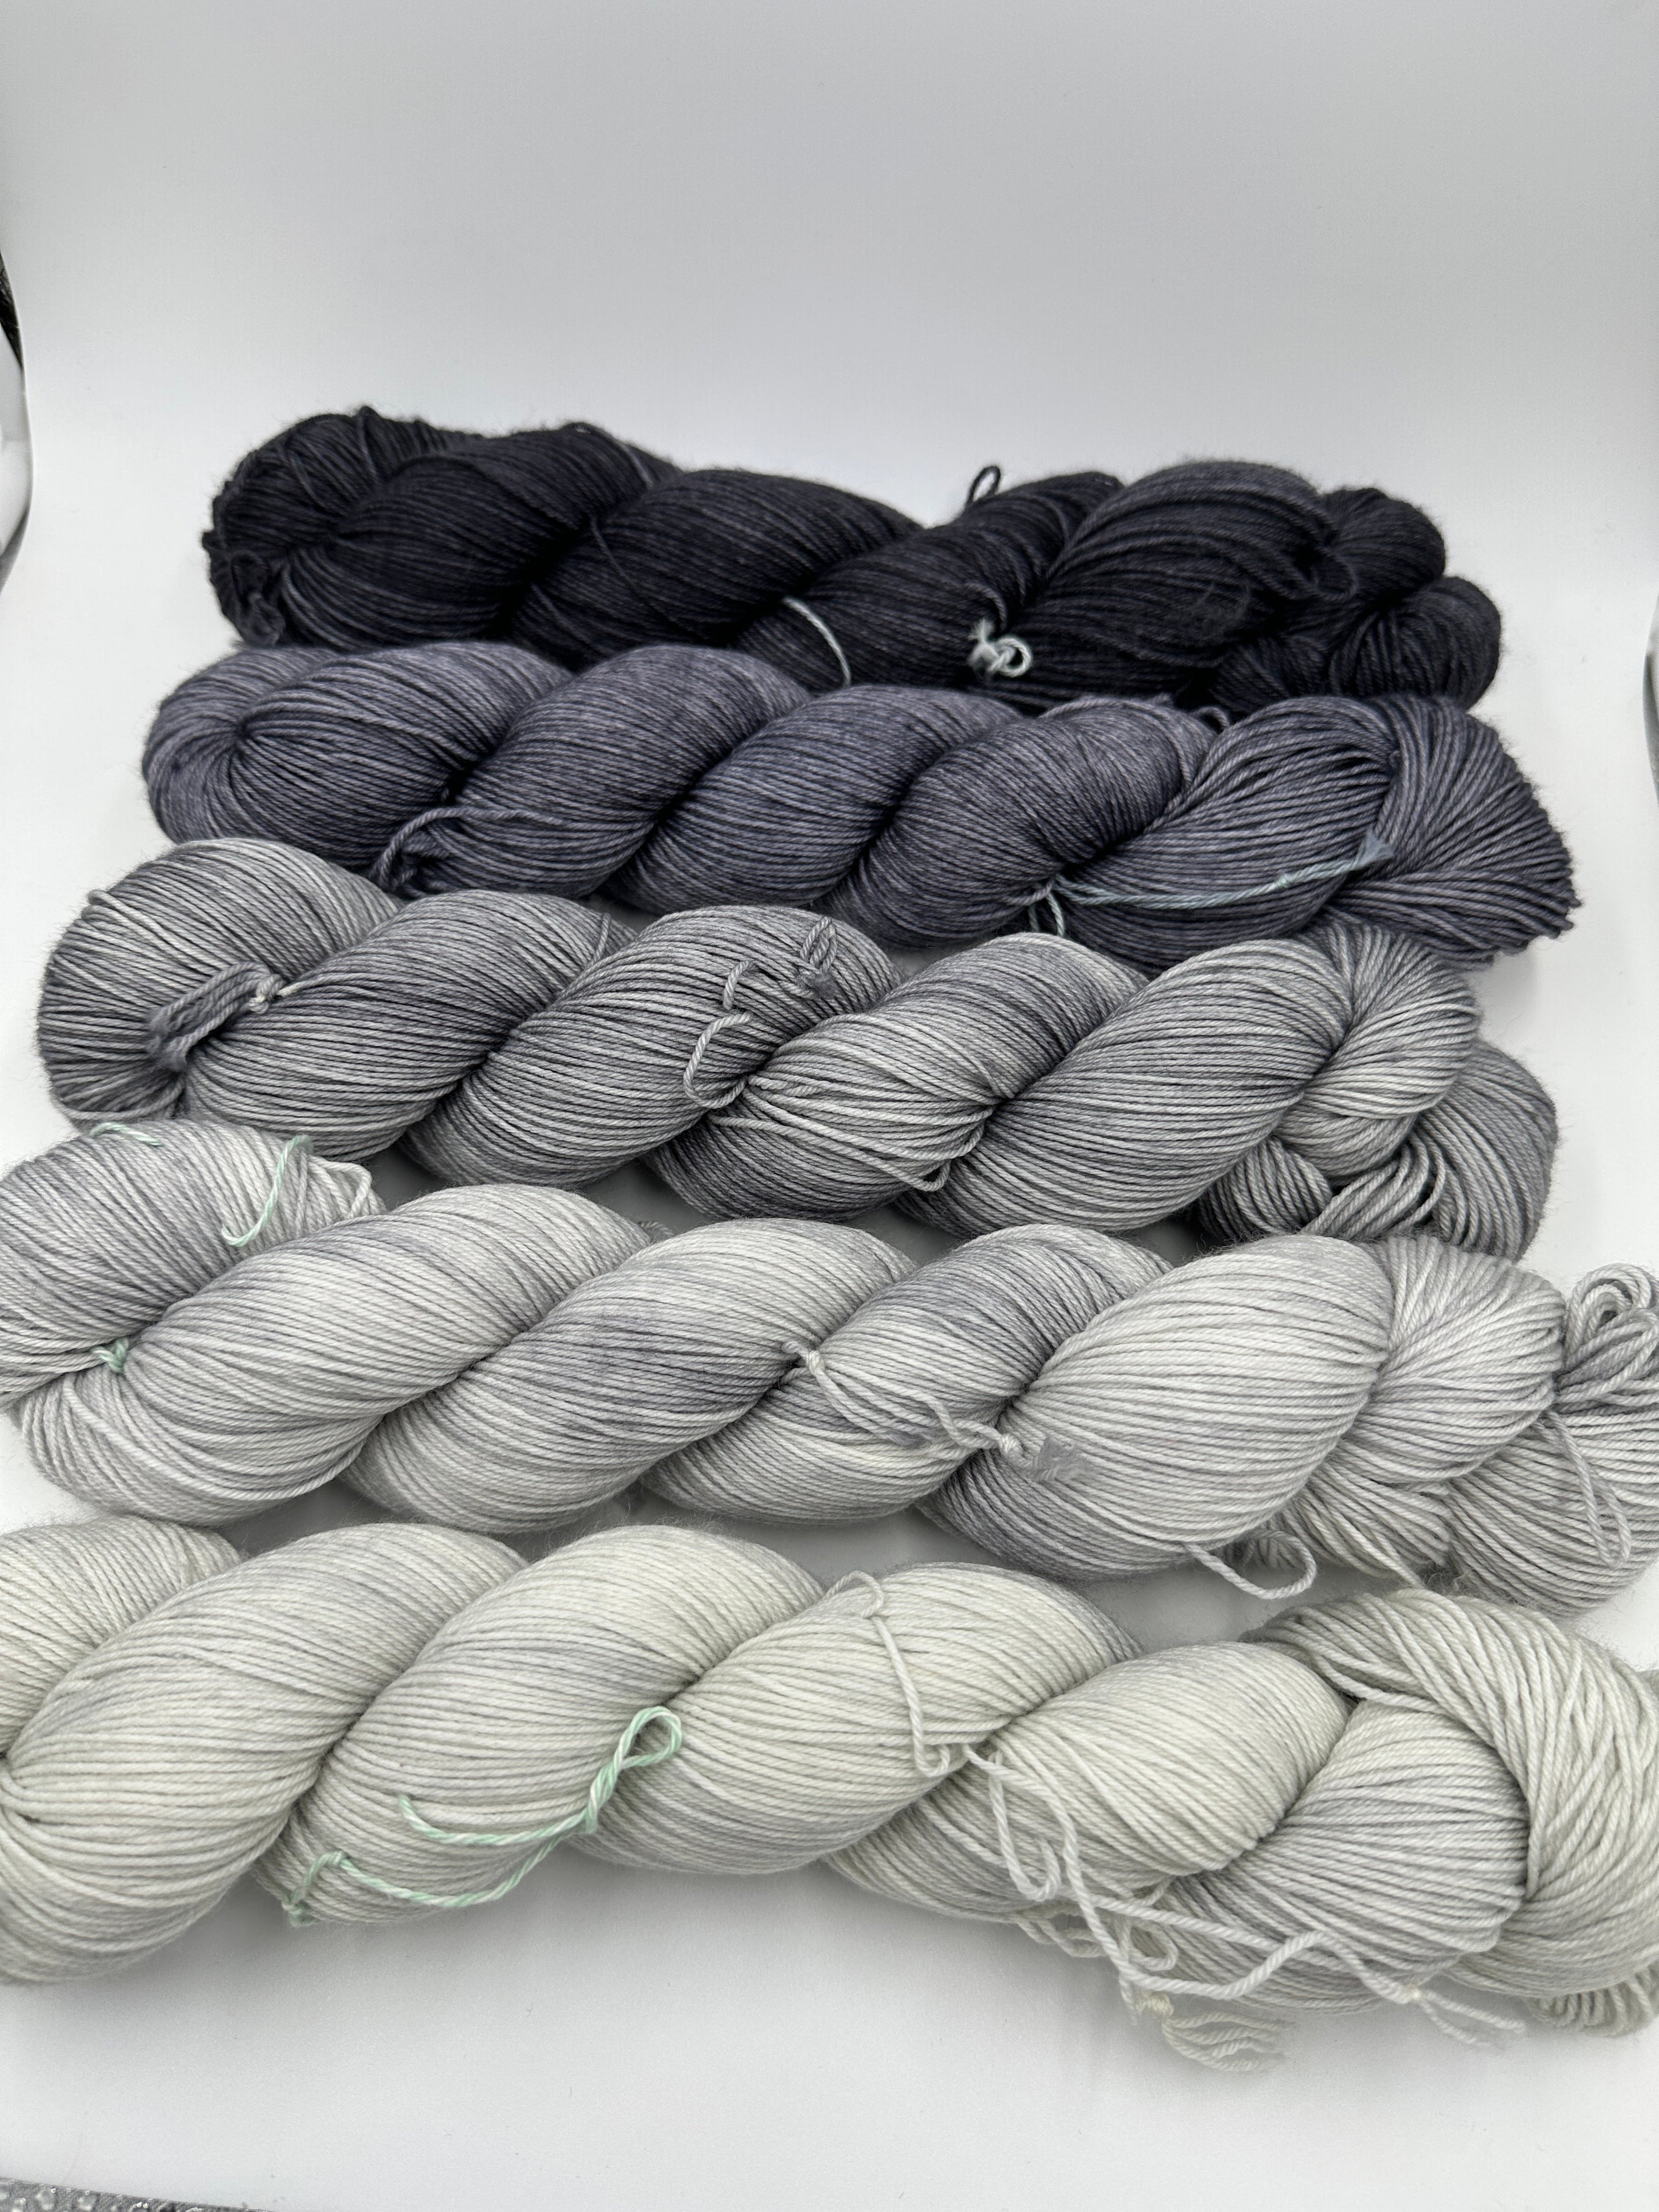 Fragmentation Shawl Yarn Set 701 Neutral Grays, 7 Skeins, Aussie